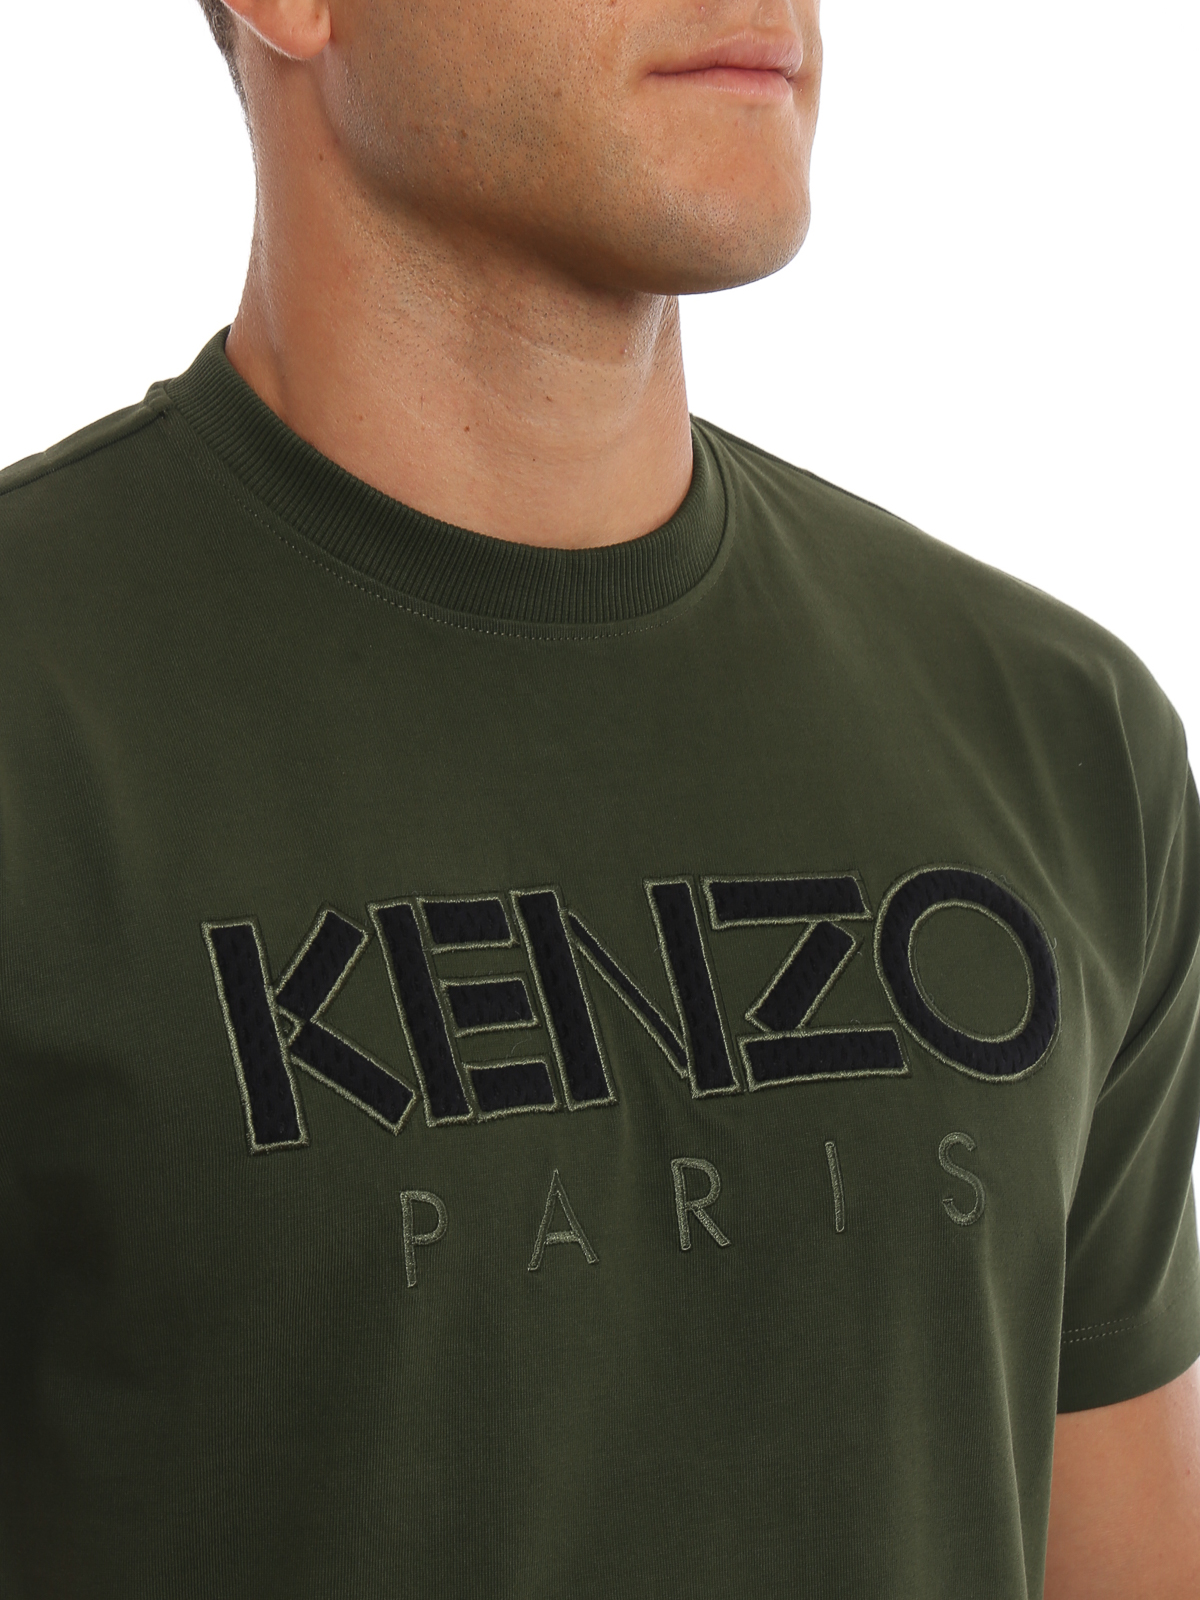 kenzo t shirt green